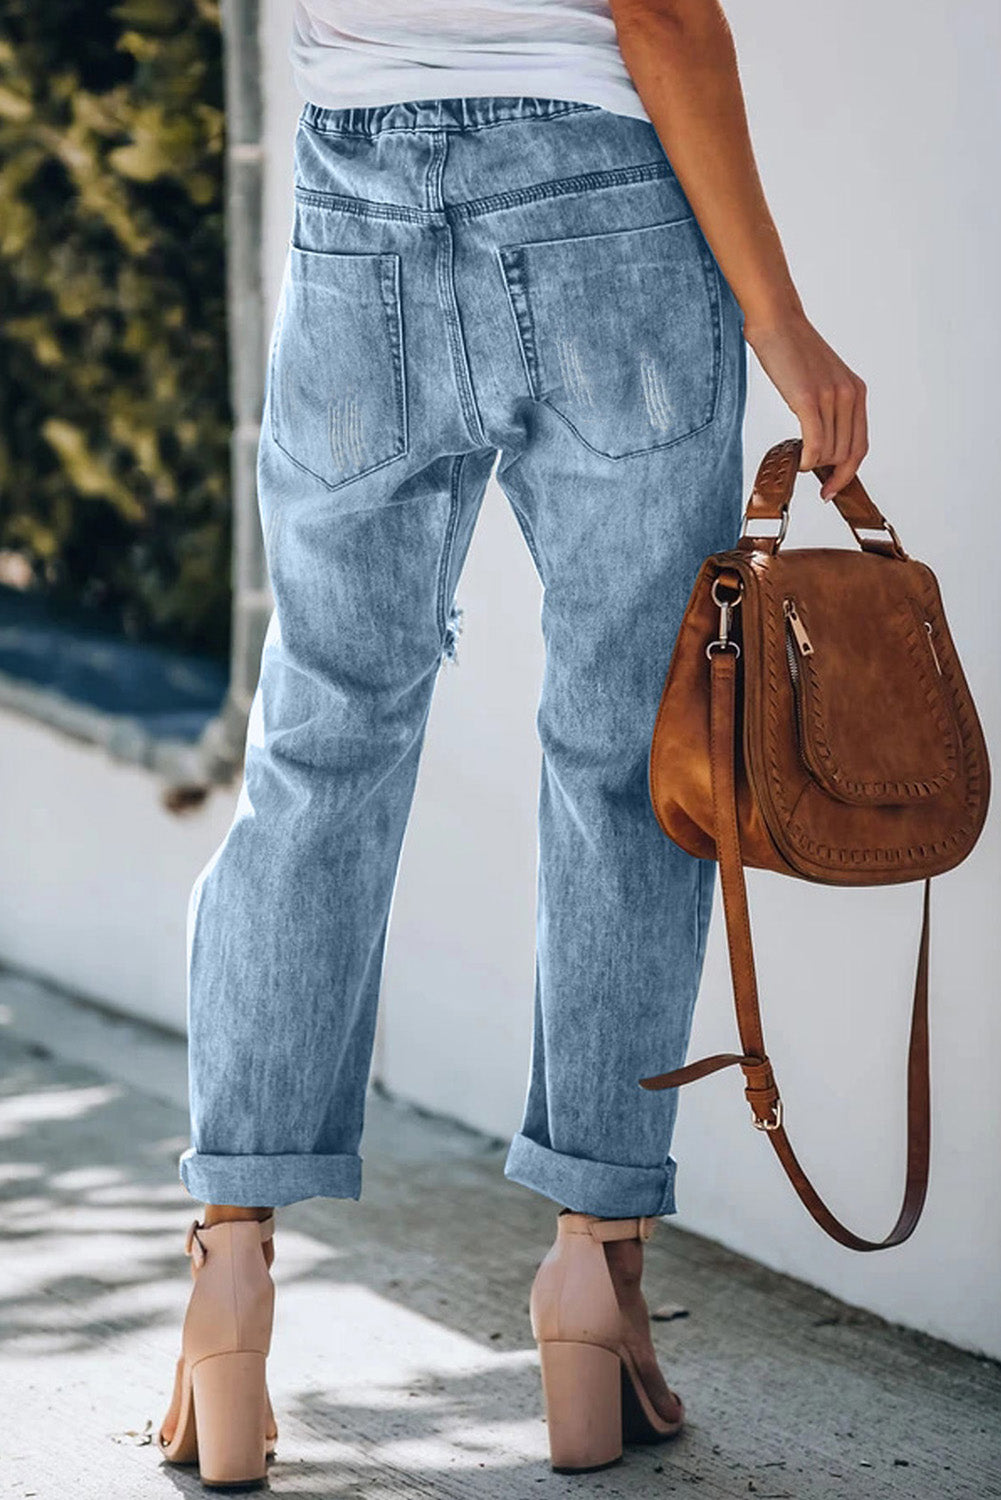 Plaid Patches Cotton Pocketed Denim Jeans Jeans JT's Designer Fashion